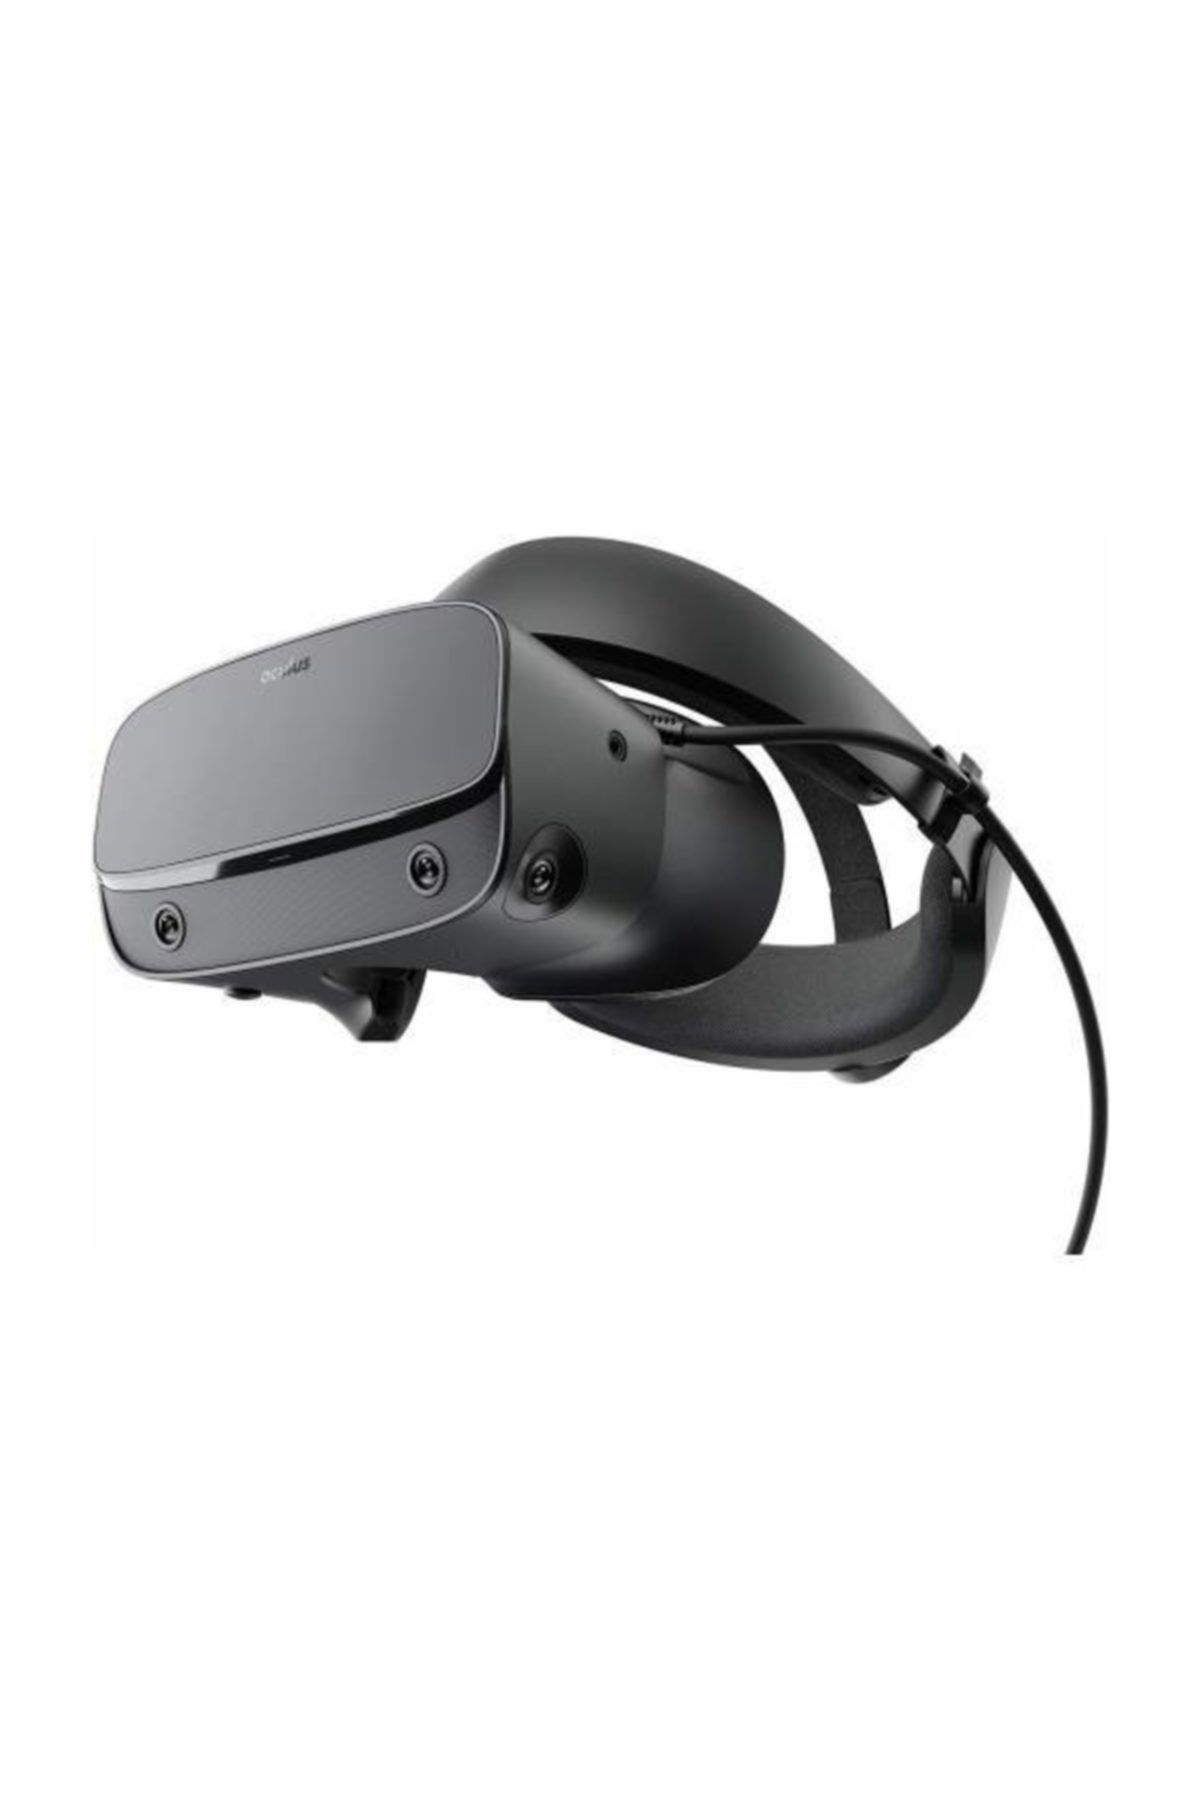 Htc Oculus Go 64 Gb Sanal Gerçeklik Gözlüğü